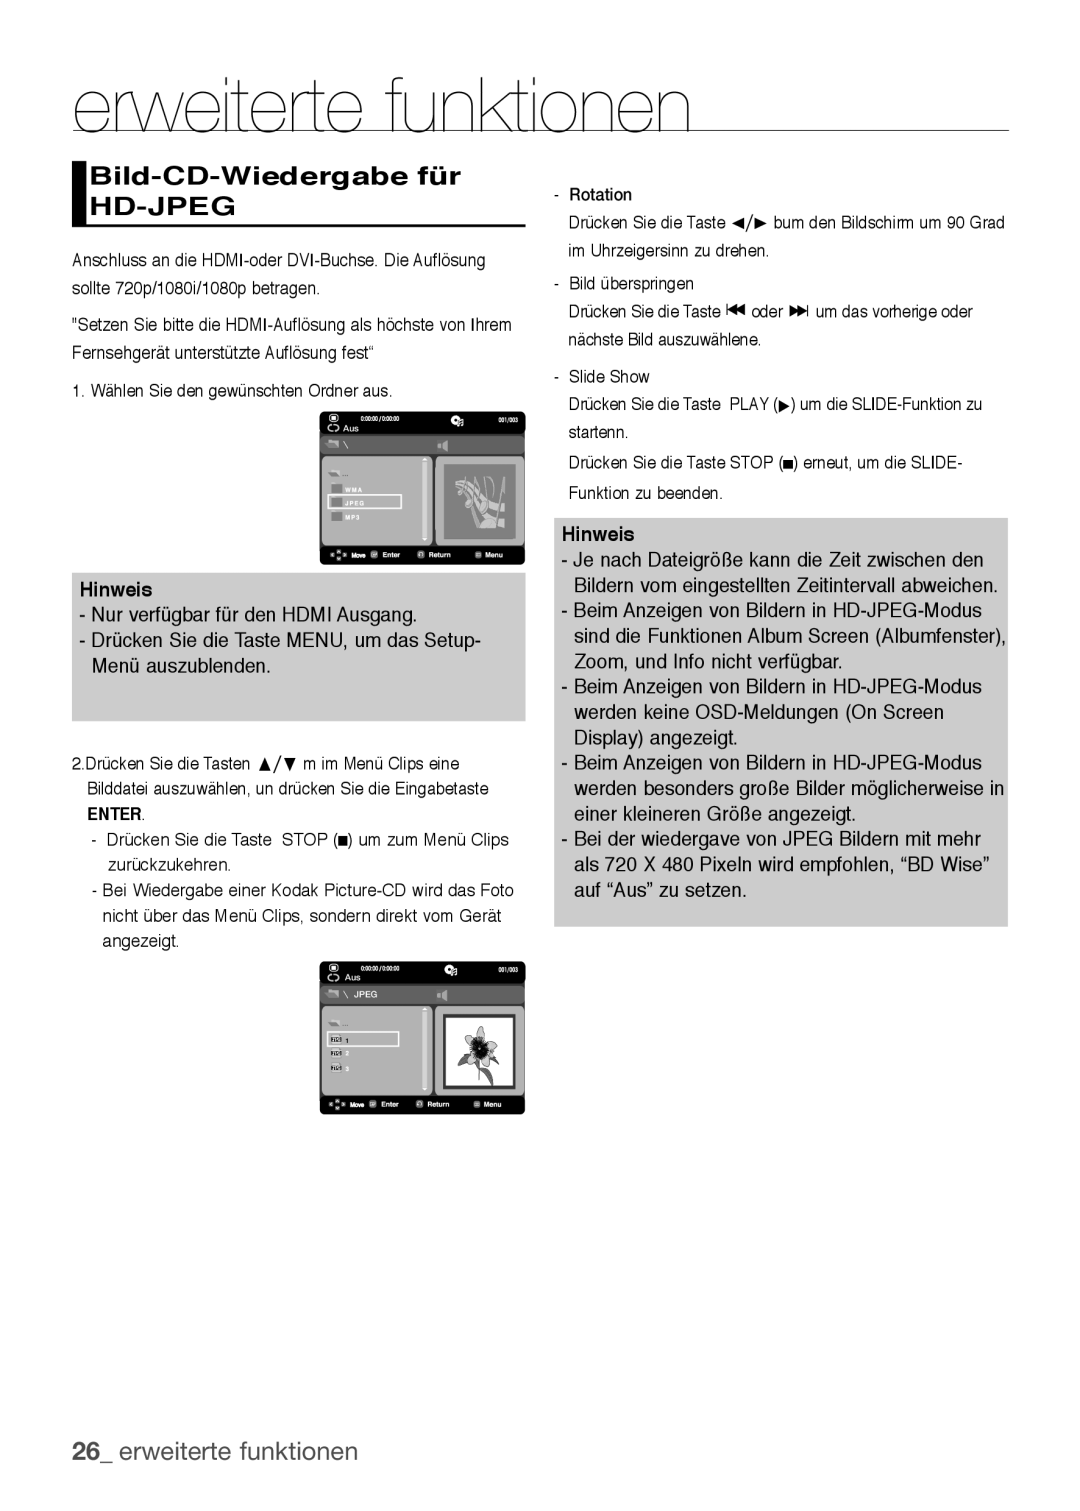 Samsung DVD-H1080/XET Bild-CD-Wiedergabe für HD-JPEG, erweiterte funktionen, Hinweis, Nur verfügbar für den HDMI Ausgang 